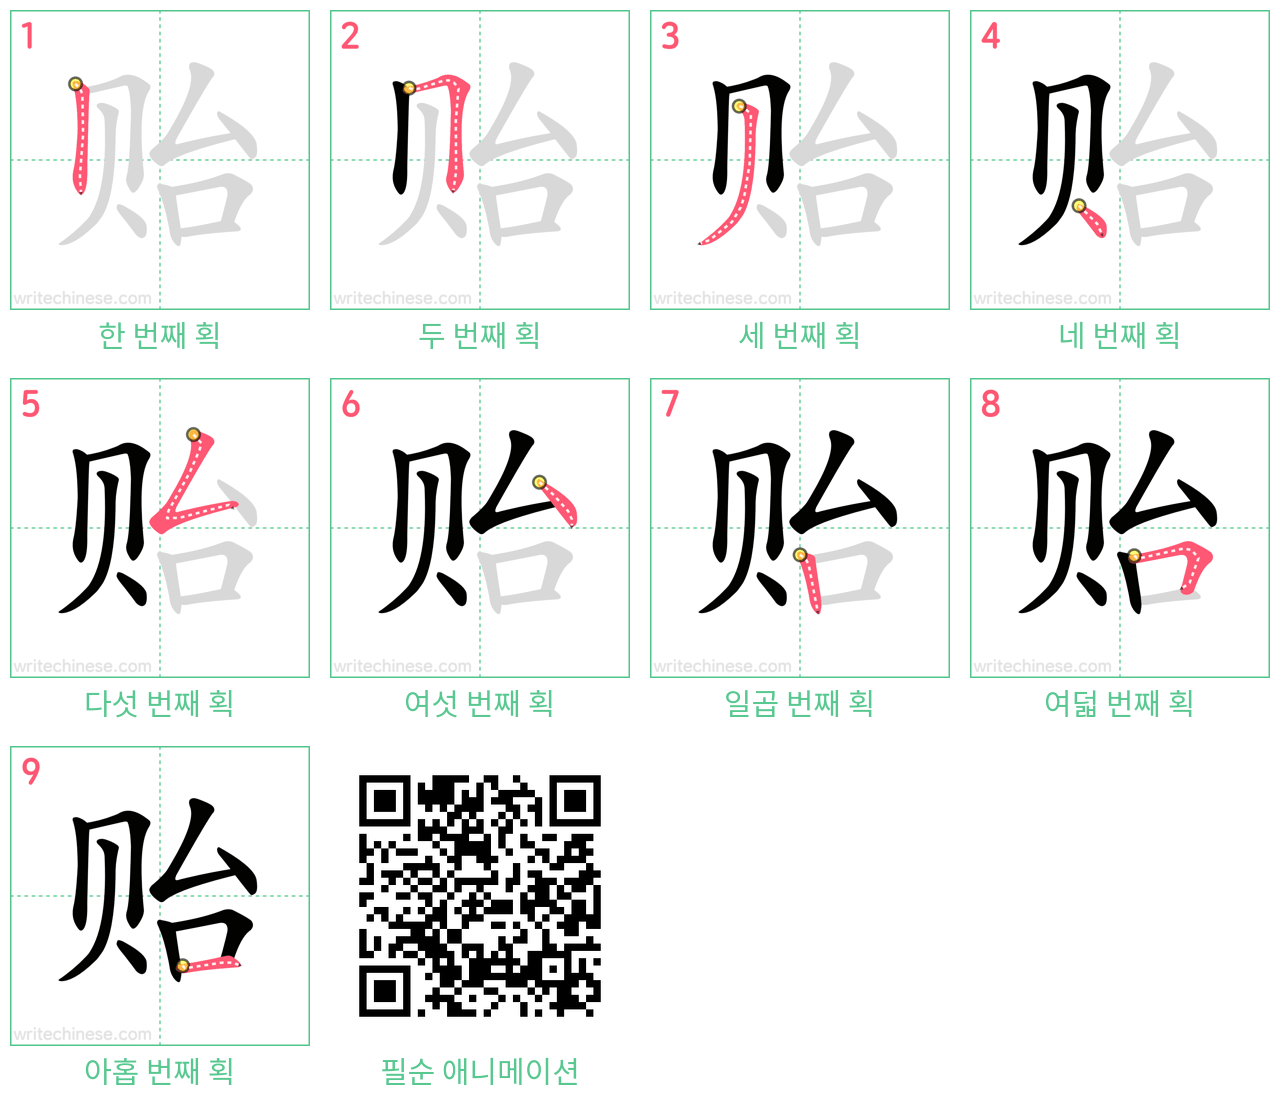 贻 step-by-step stroke order diagrams